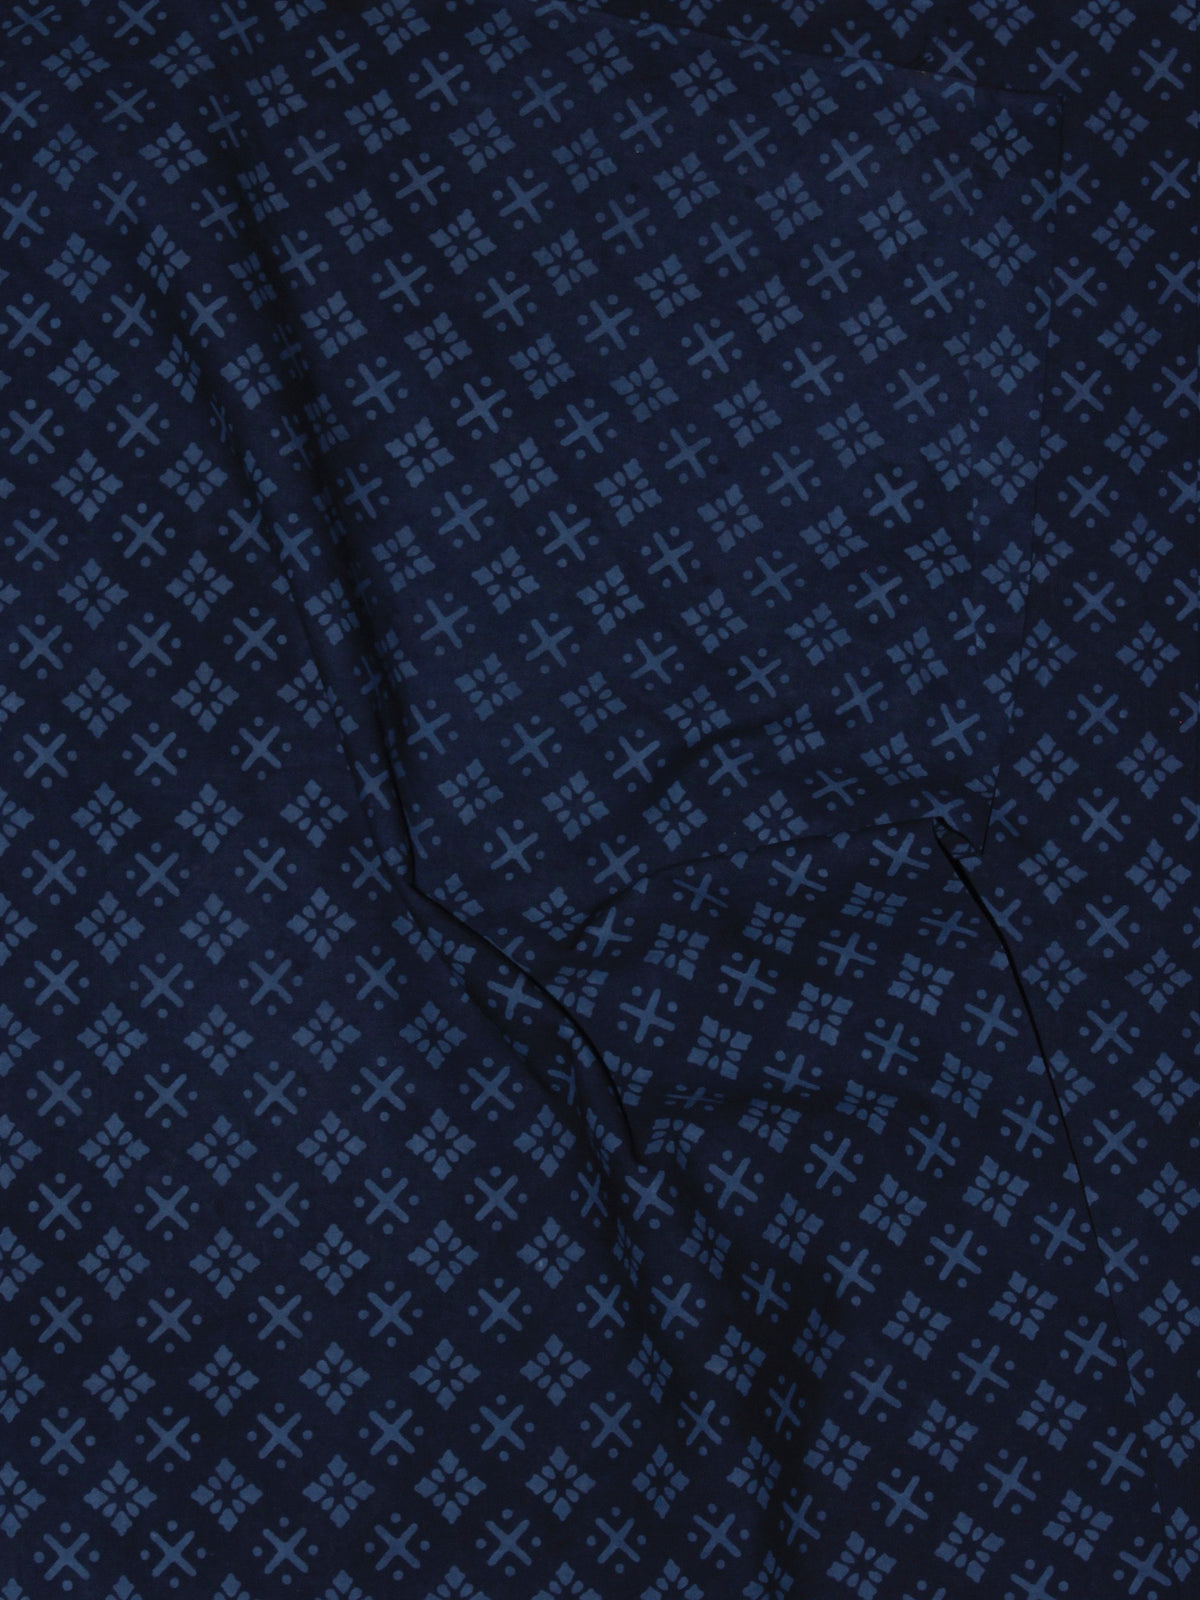 Indigo Blue Block Printed Cotton Fabric Per Meter - F0916698